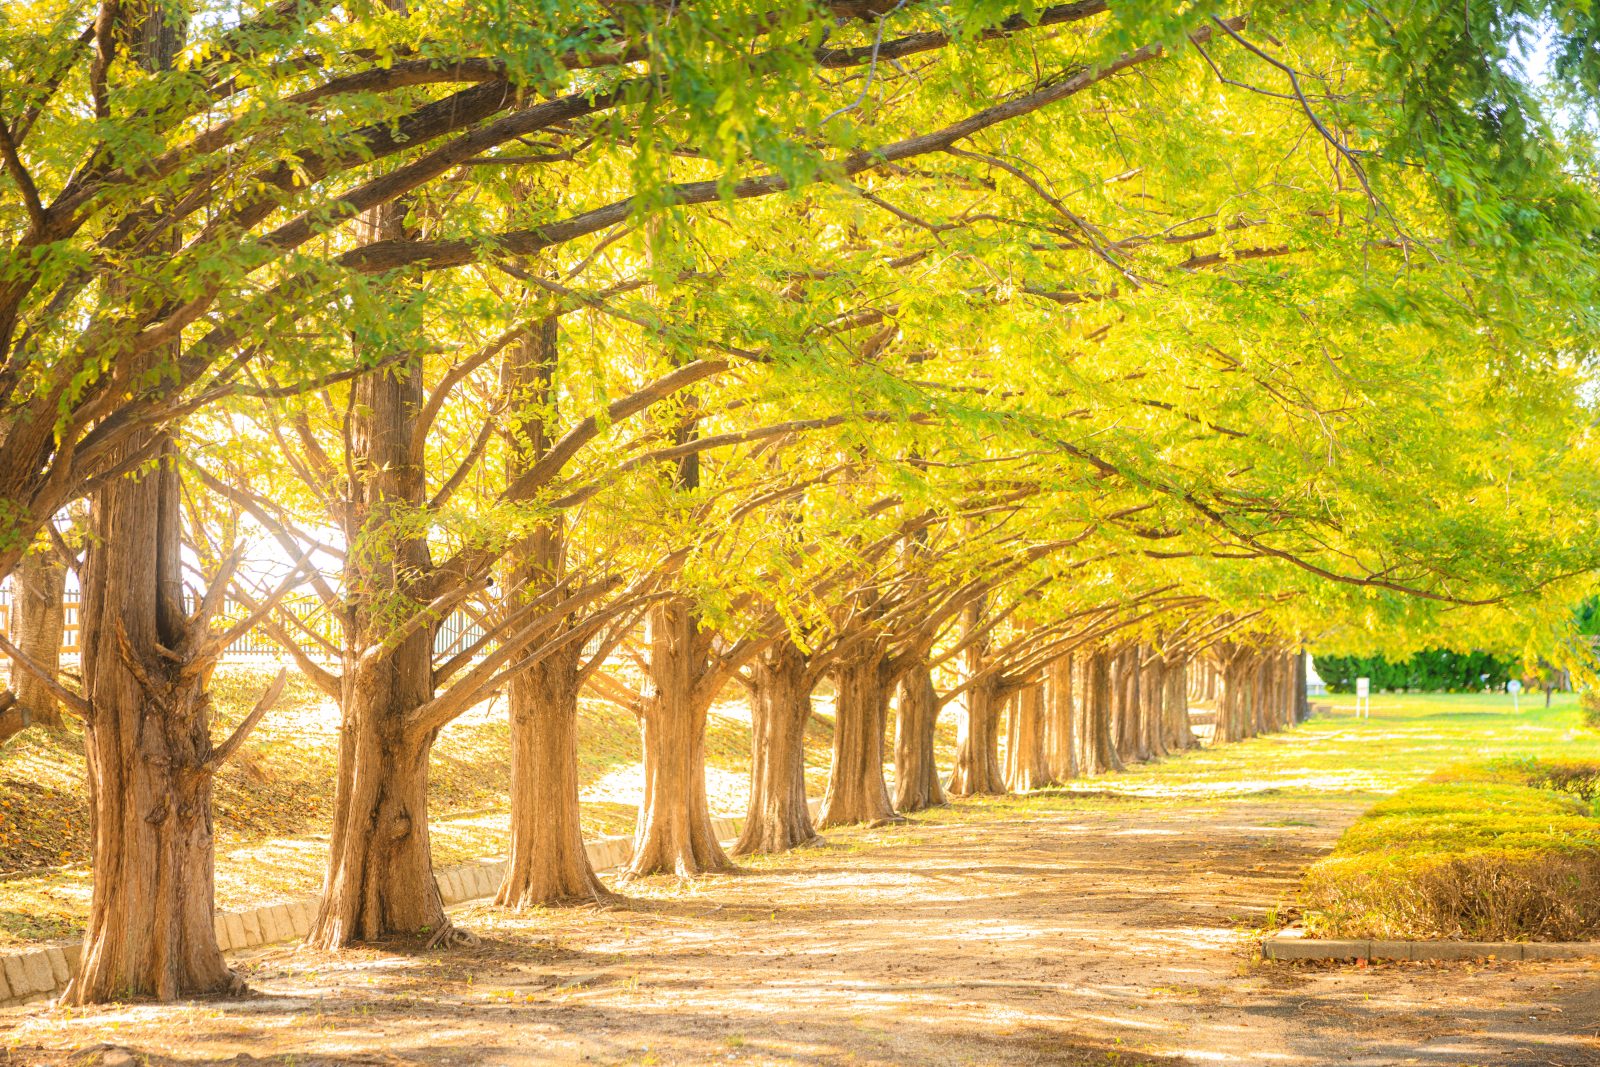 黄葉に色づくメタセコイア並木